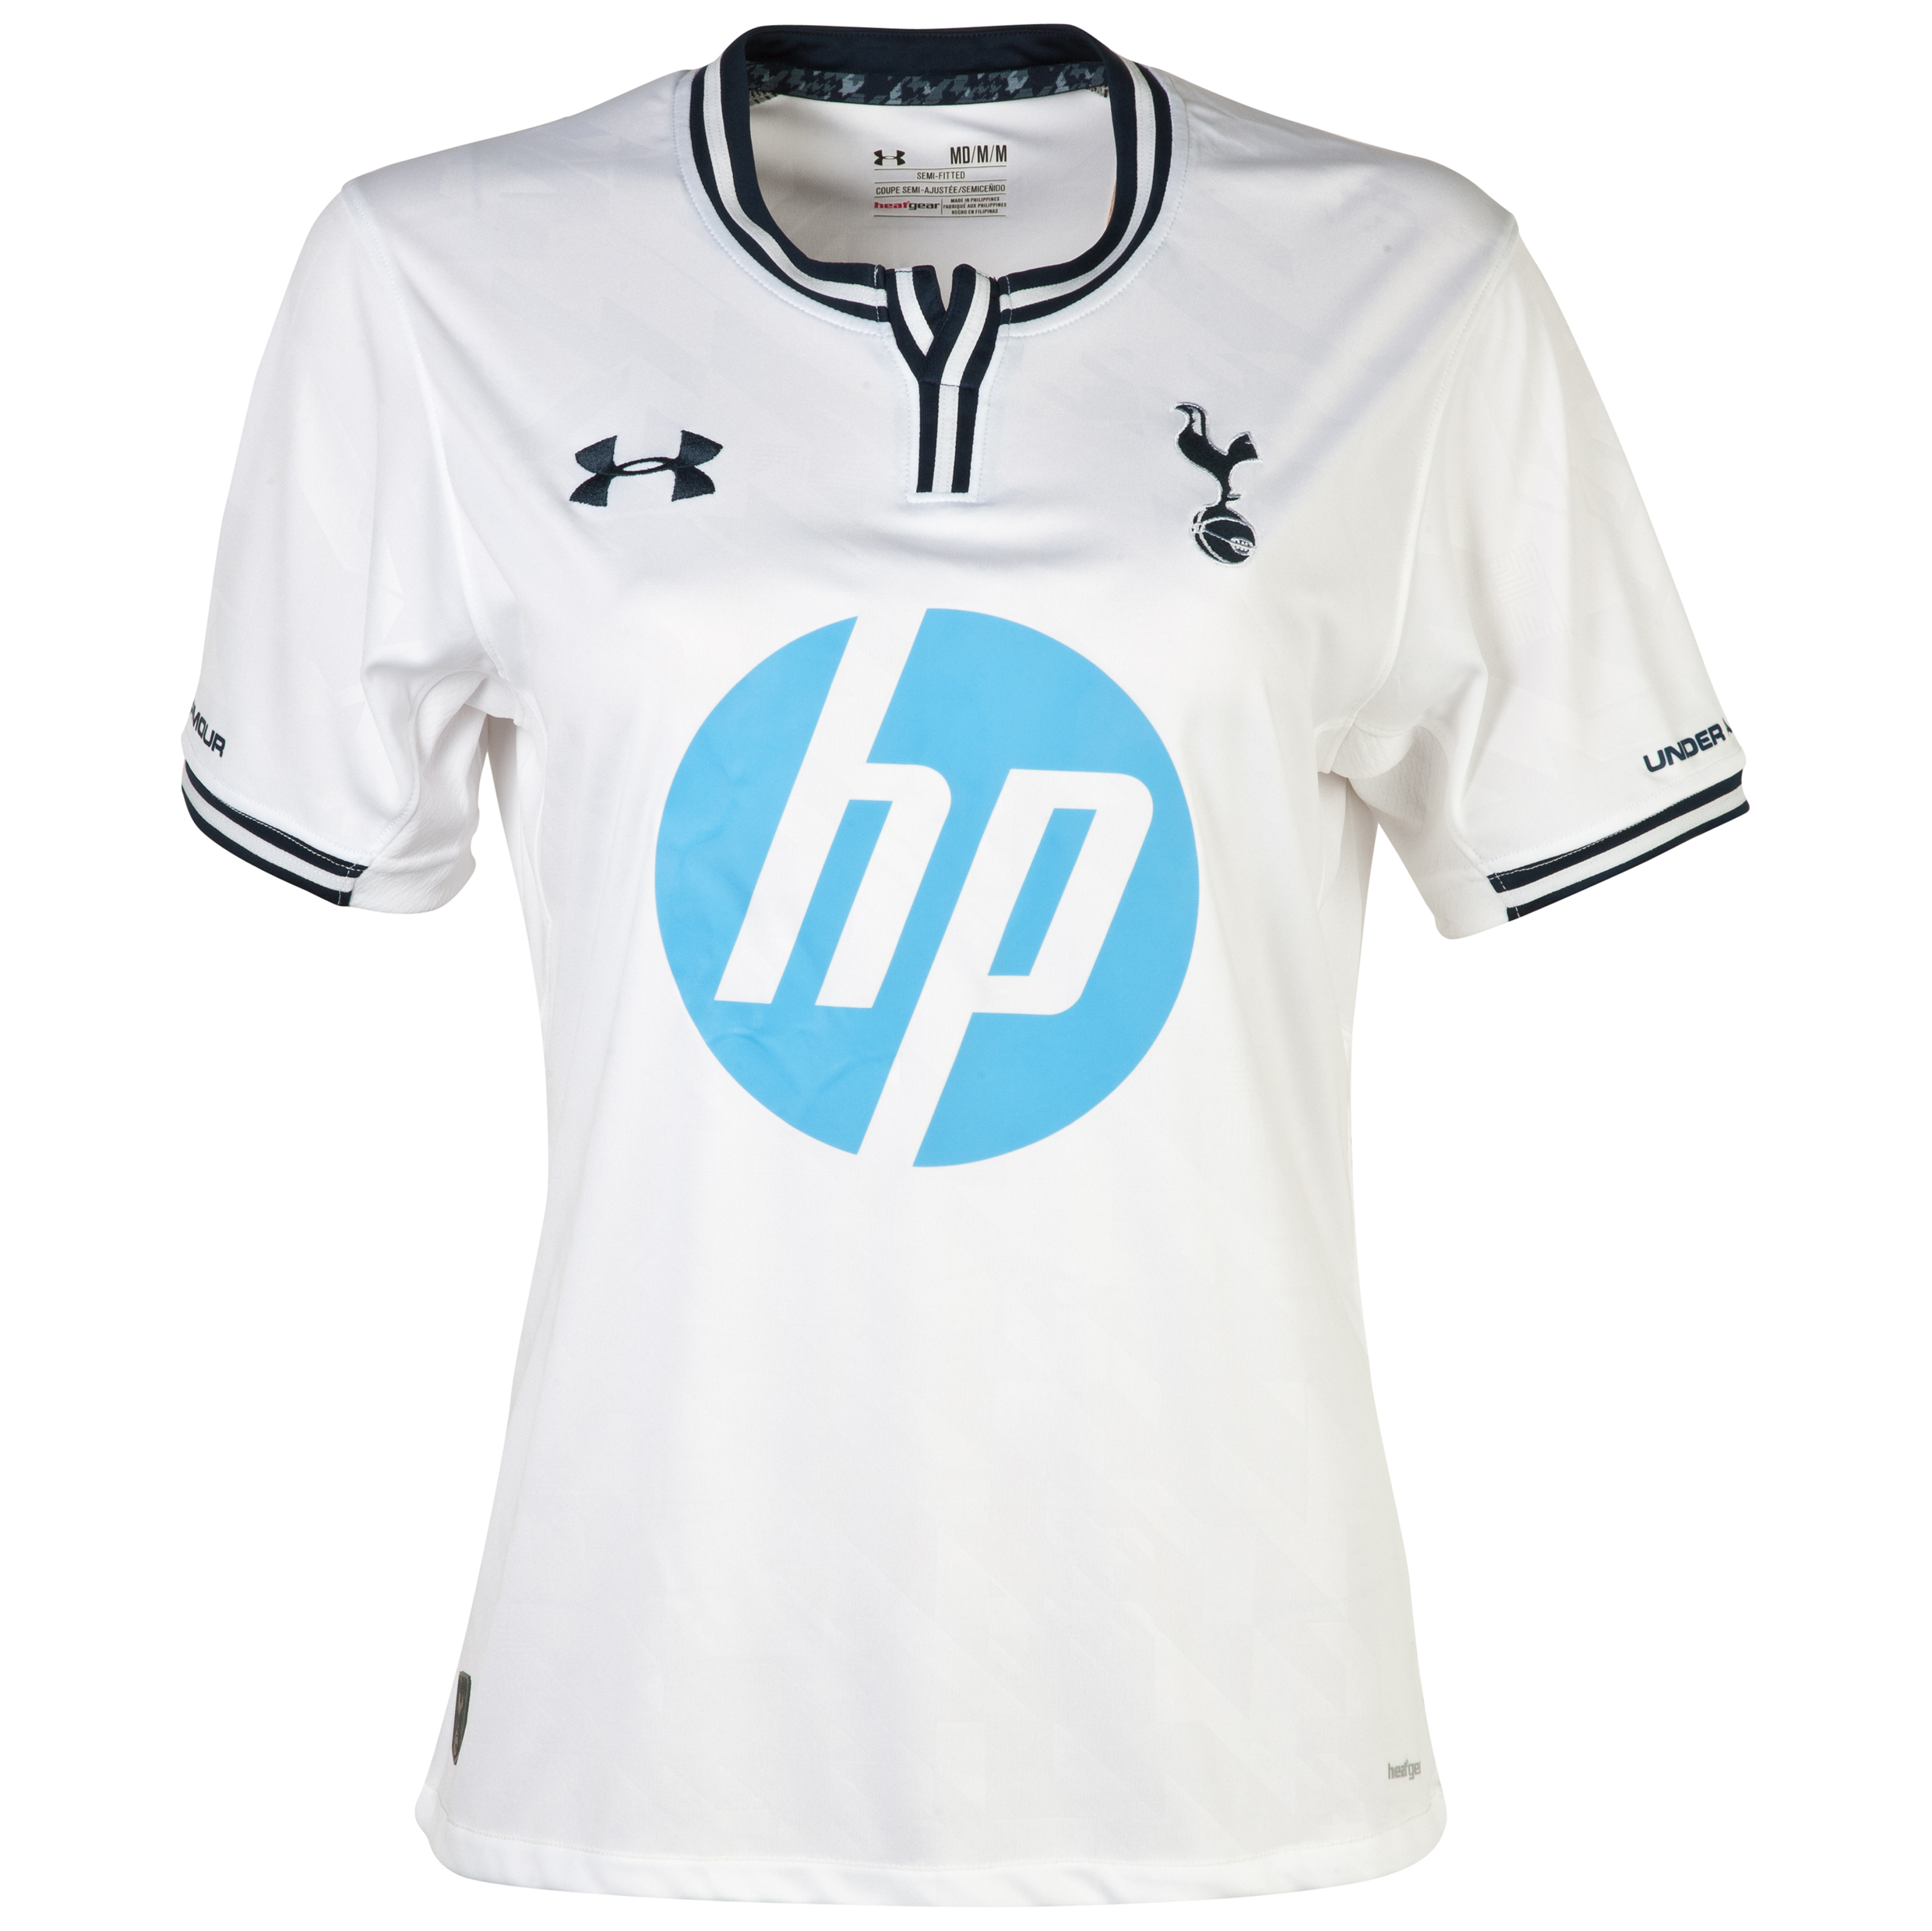 Tottenham Hotspur Home Shirt 2013/14 - Womens